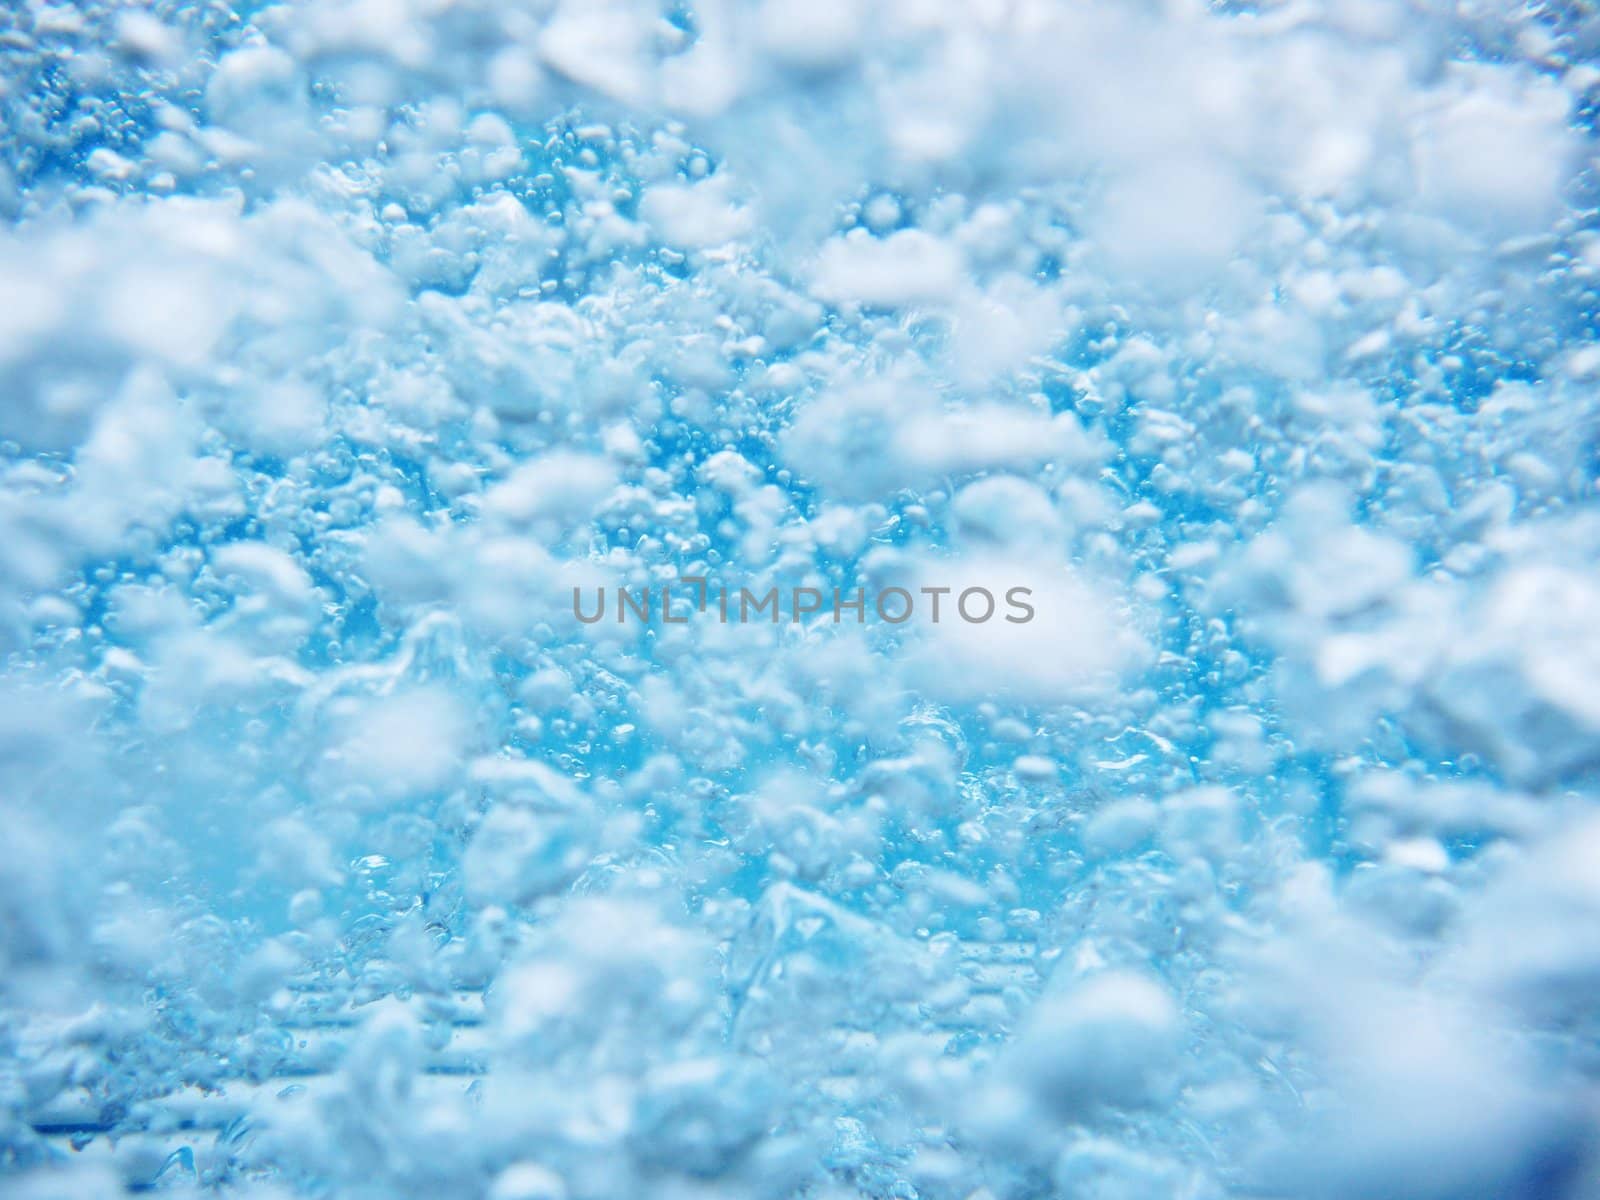 Clean blue water splash on white background